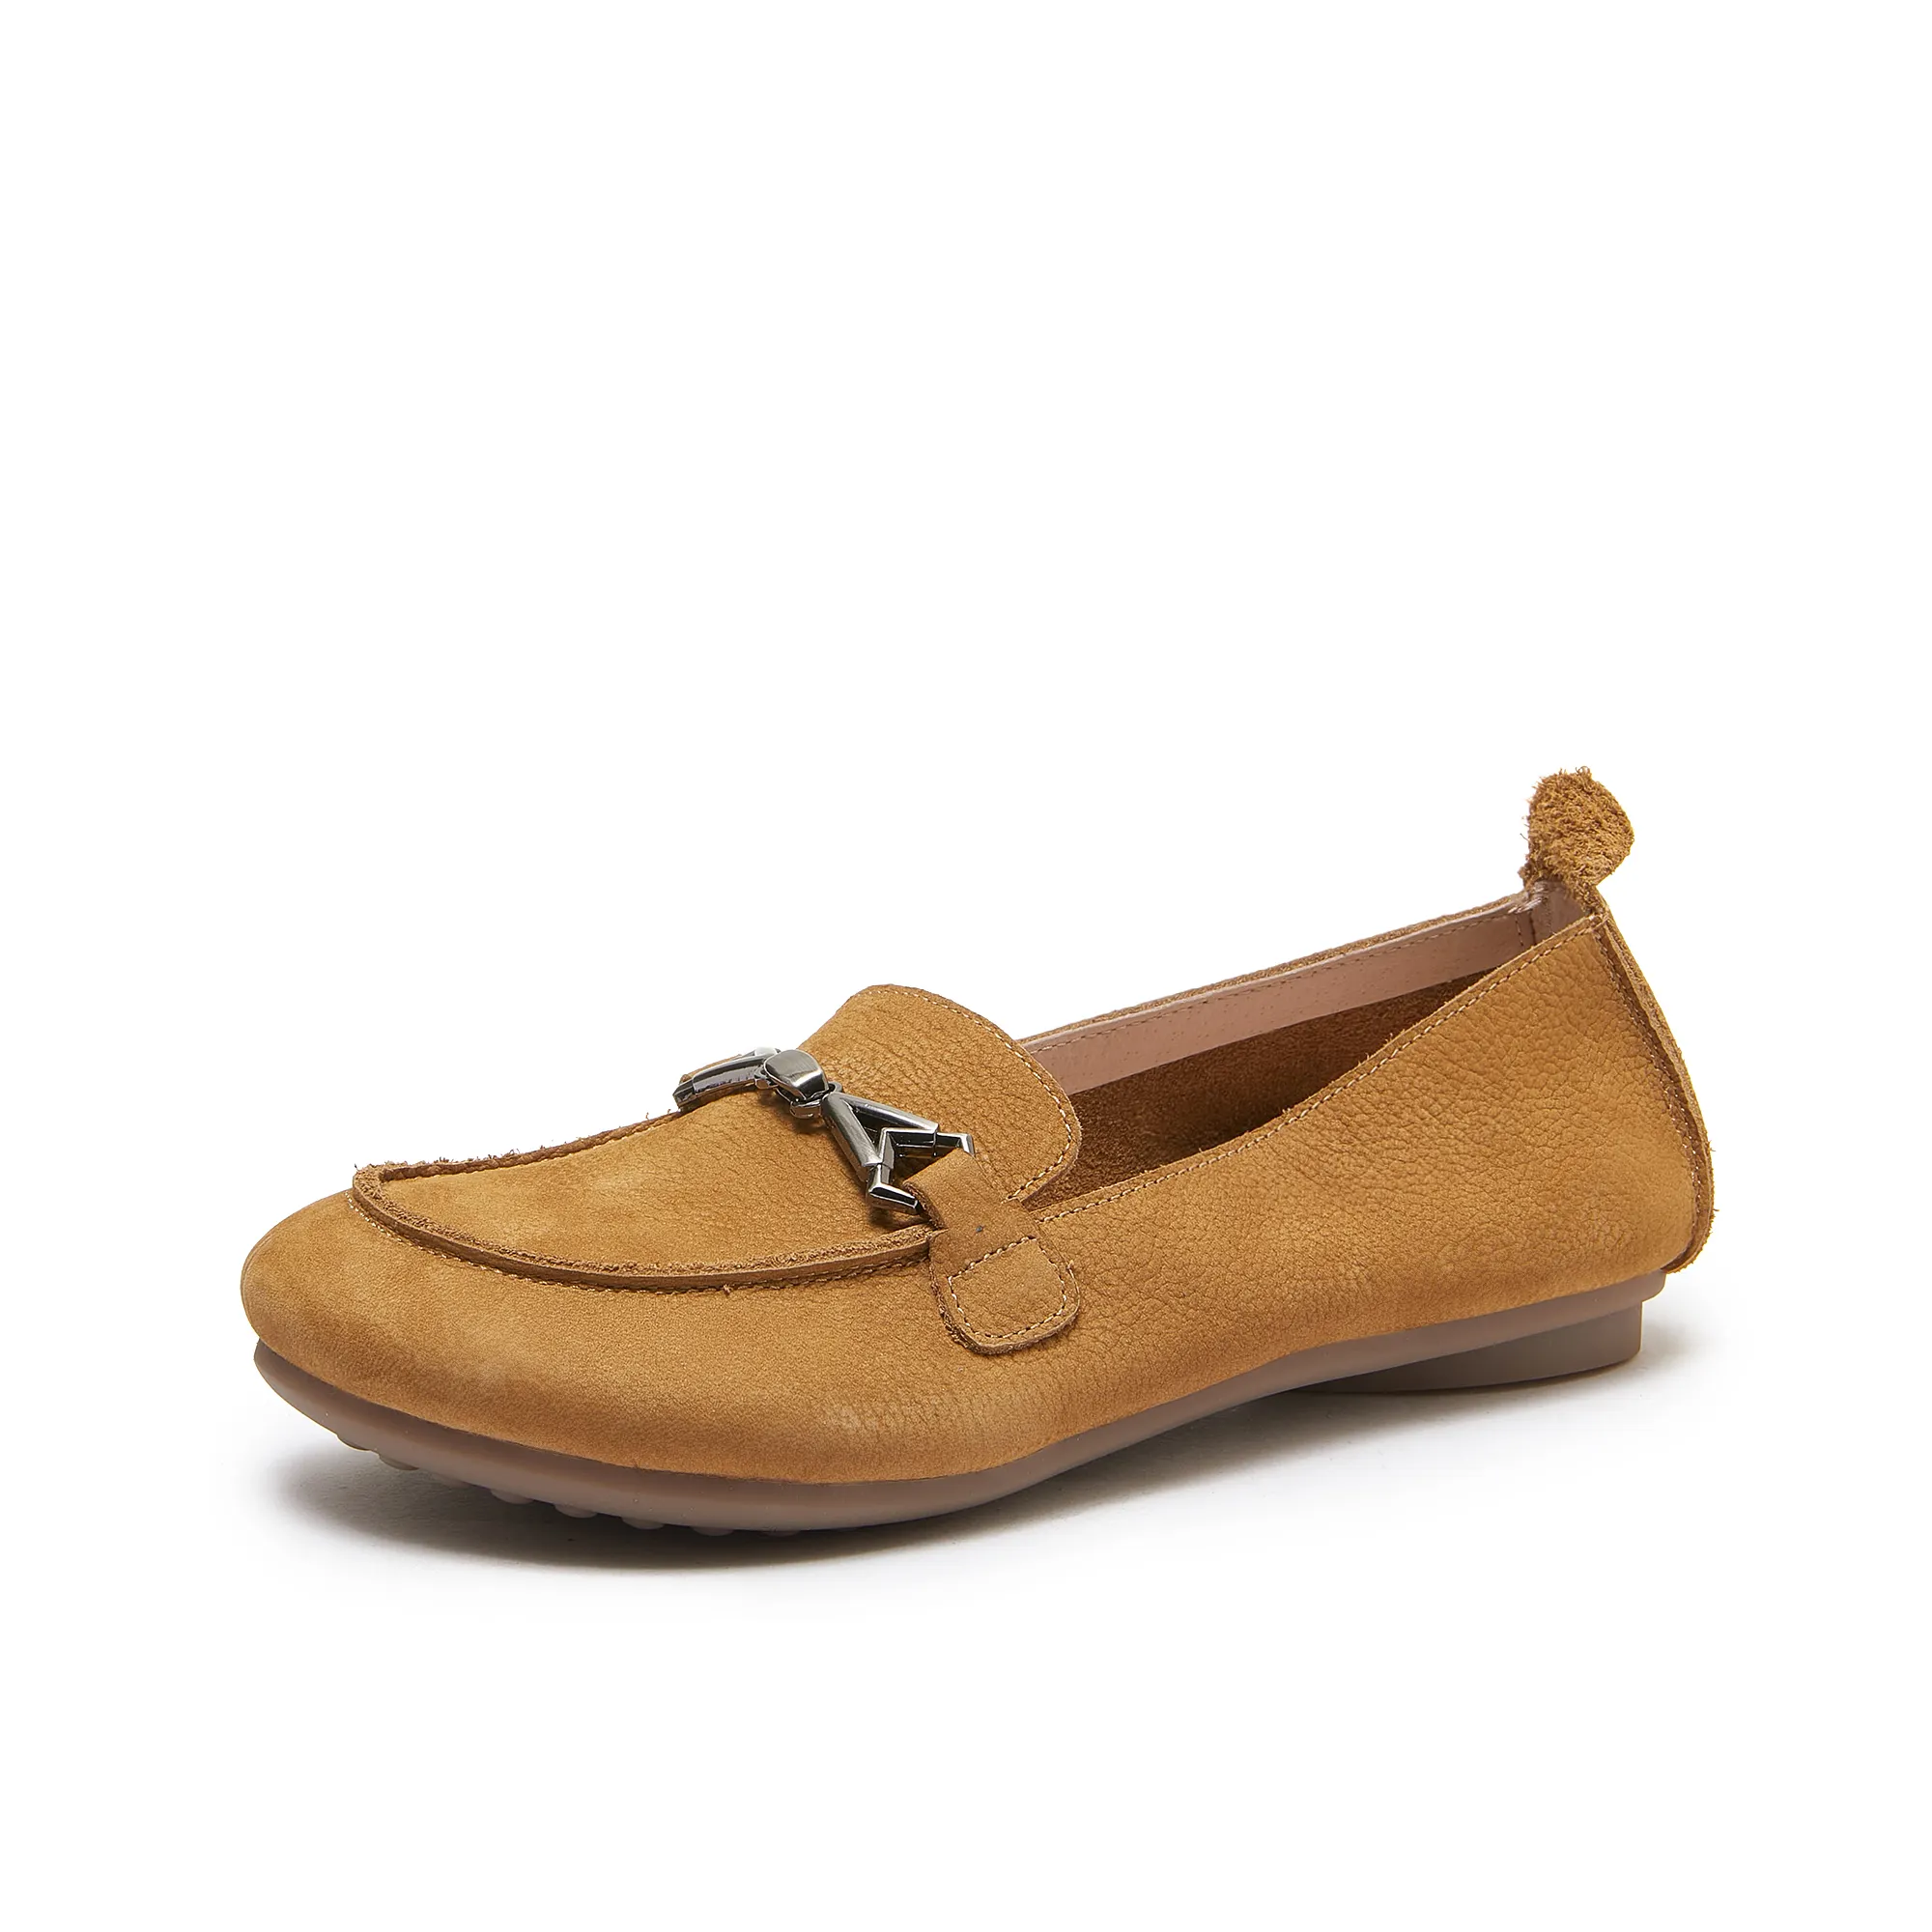 Sandalias planas informales suaves de estilo para caminar personalizadas de marca, zapatos mocasines de cuero natural, zapatos para mujer, mocasines de cuero de fábrica